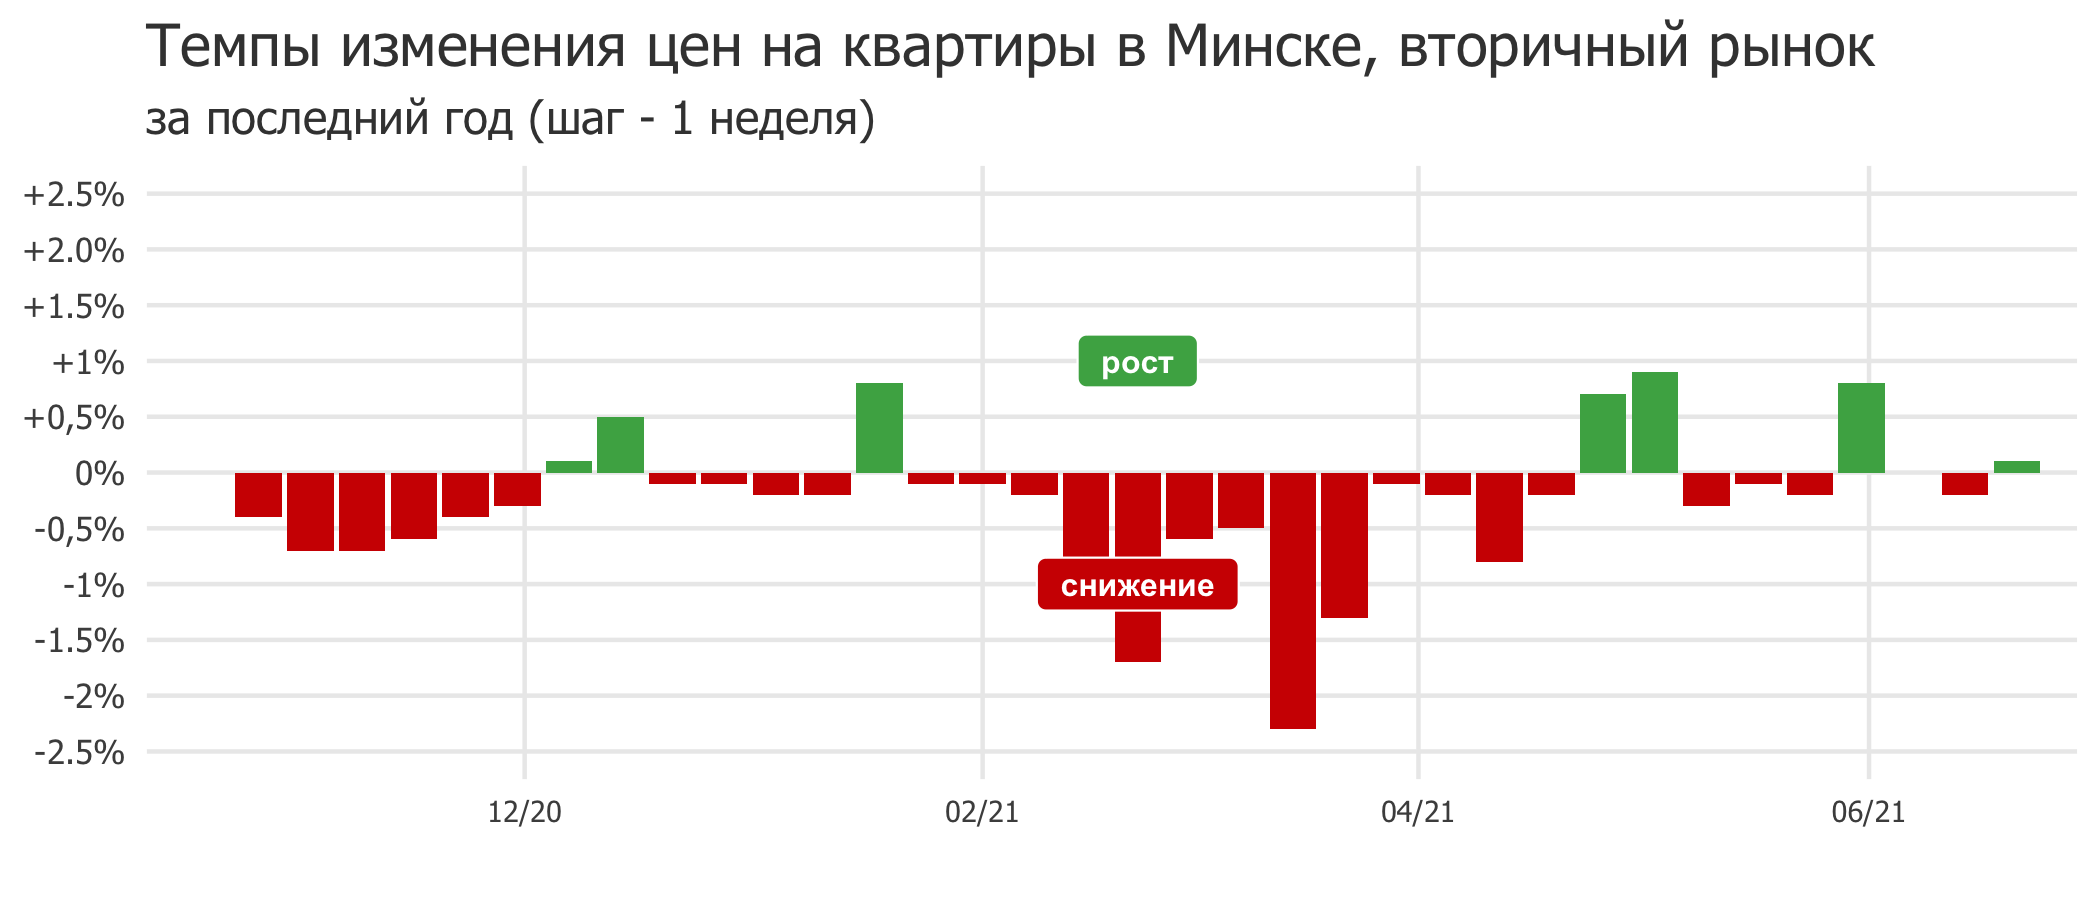 Мониторинг цен предложения квартир в Минске за 14-21 июня 2021 года